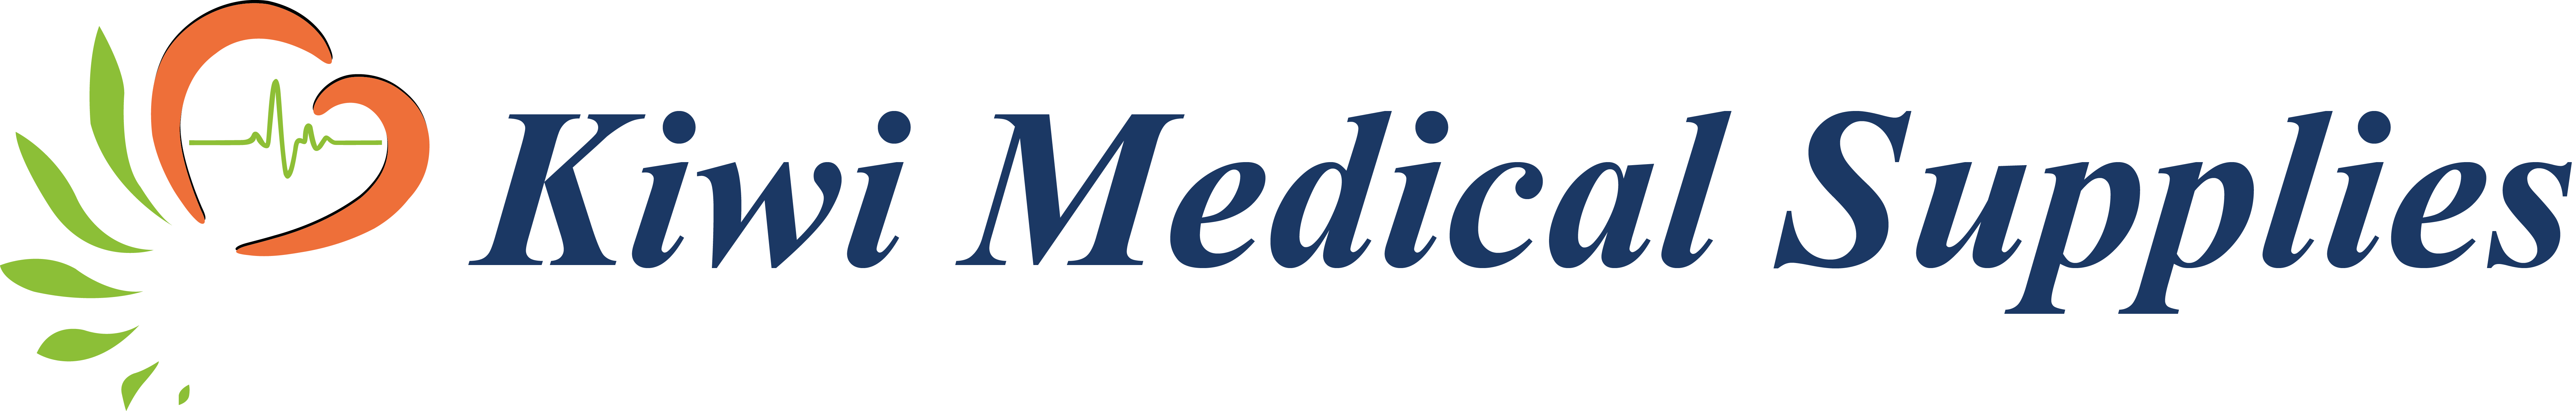 Kiwi Medical Supplies logo